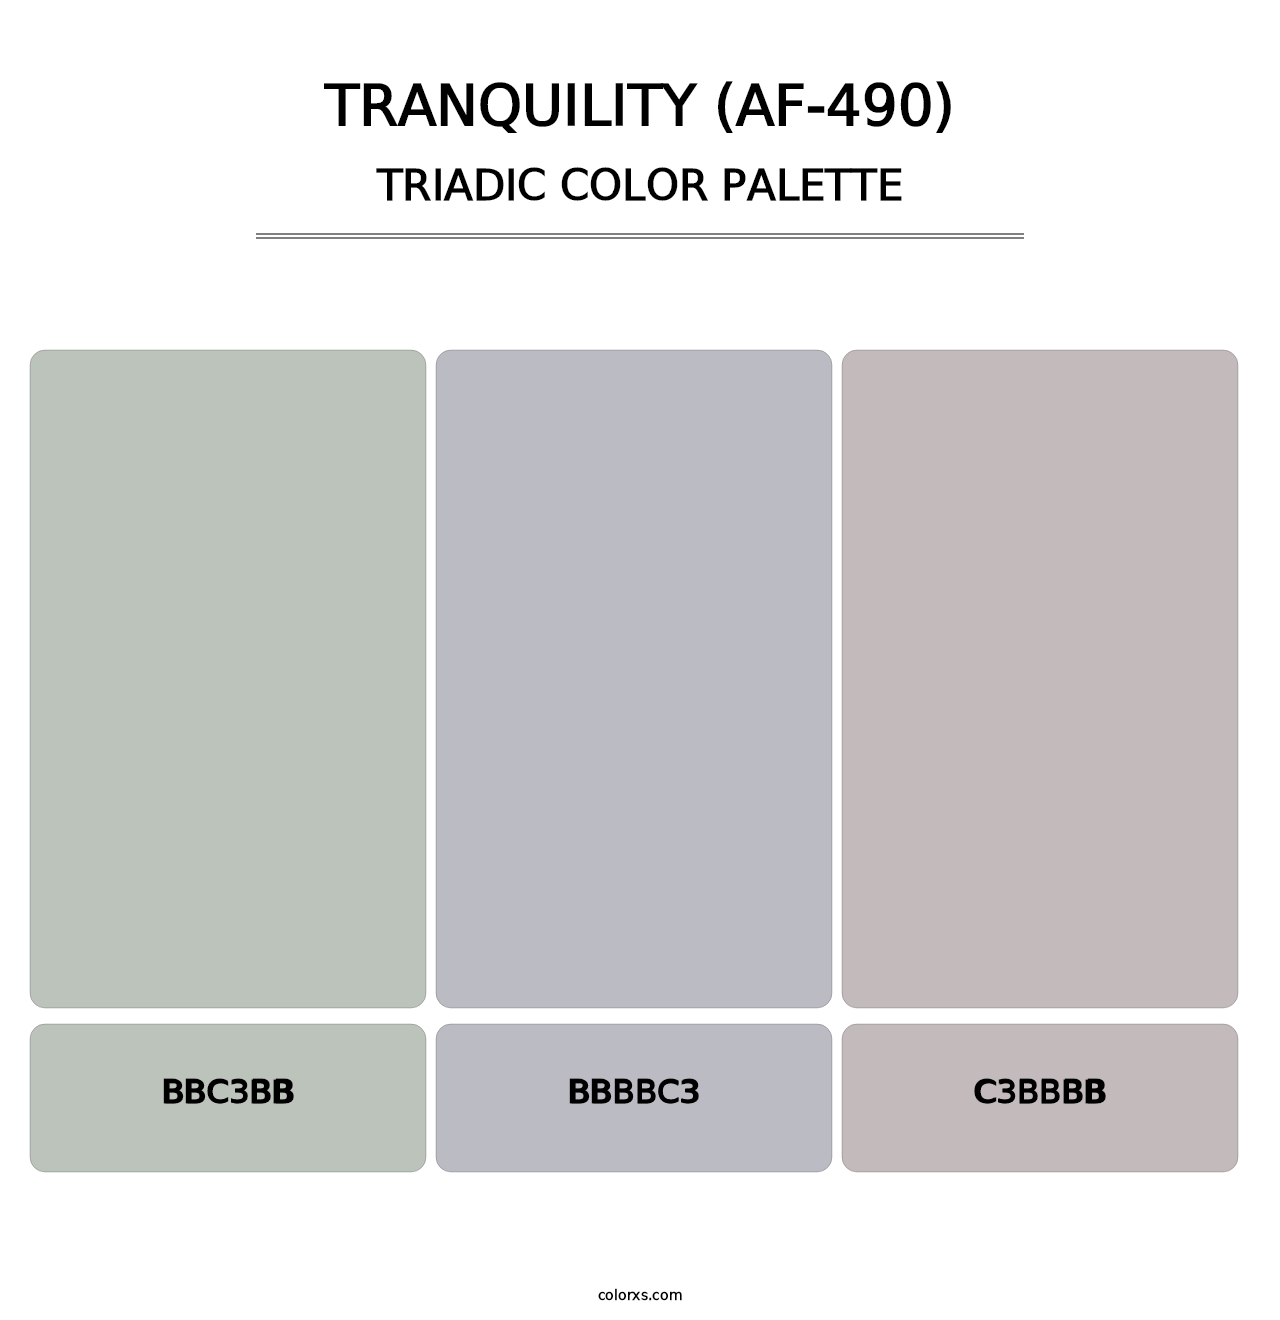 Tranquility (AF-490) - Triadic Color Palette